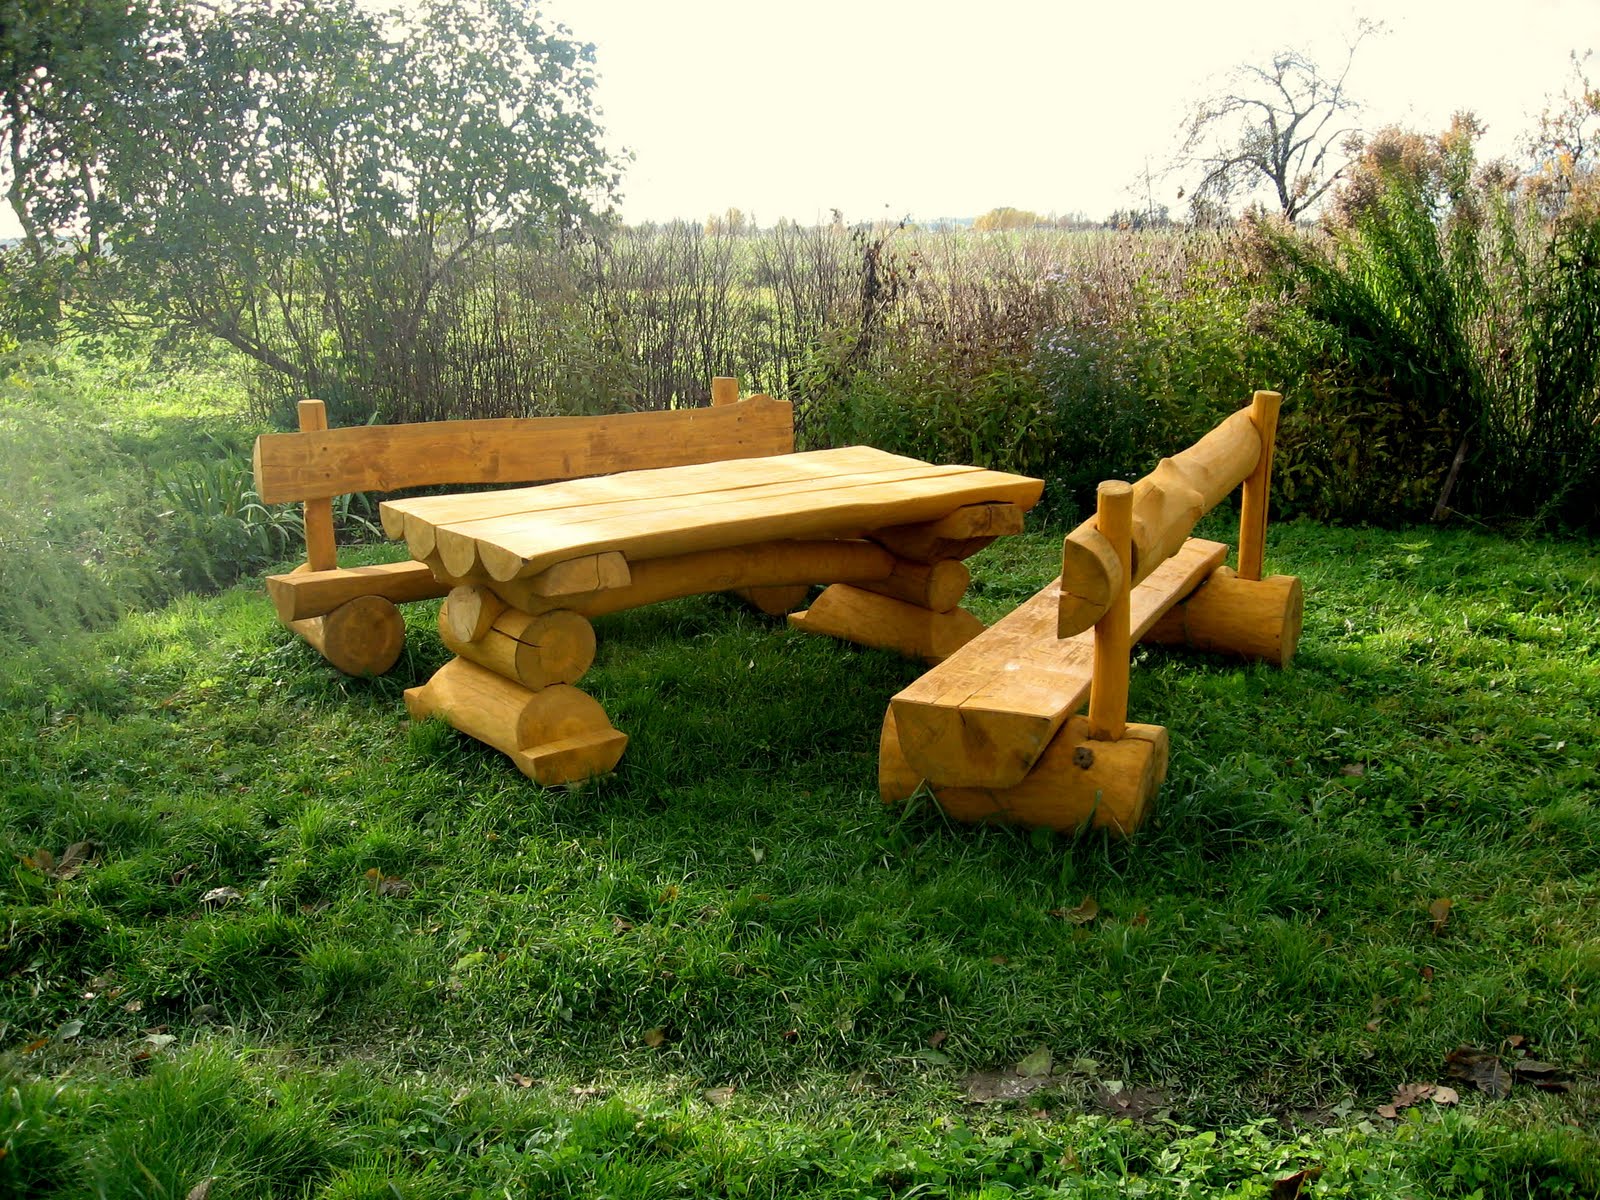 Log type furniture